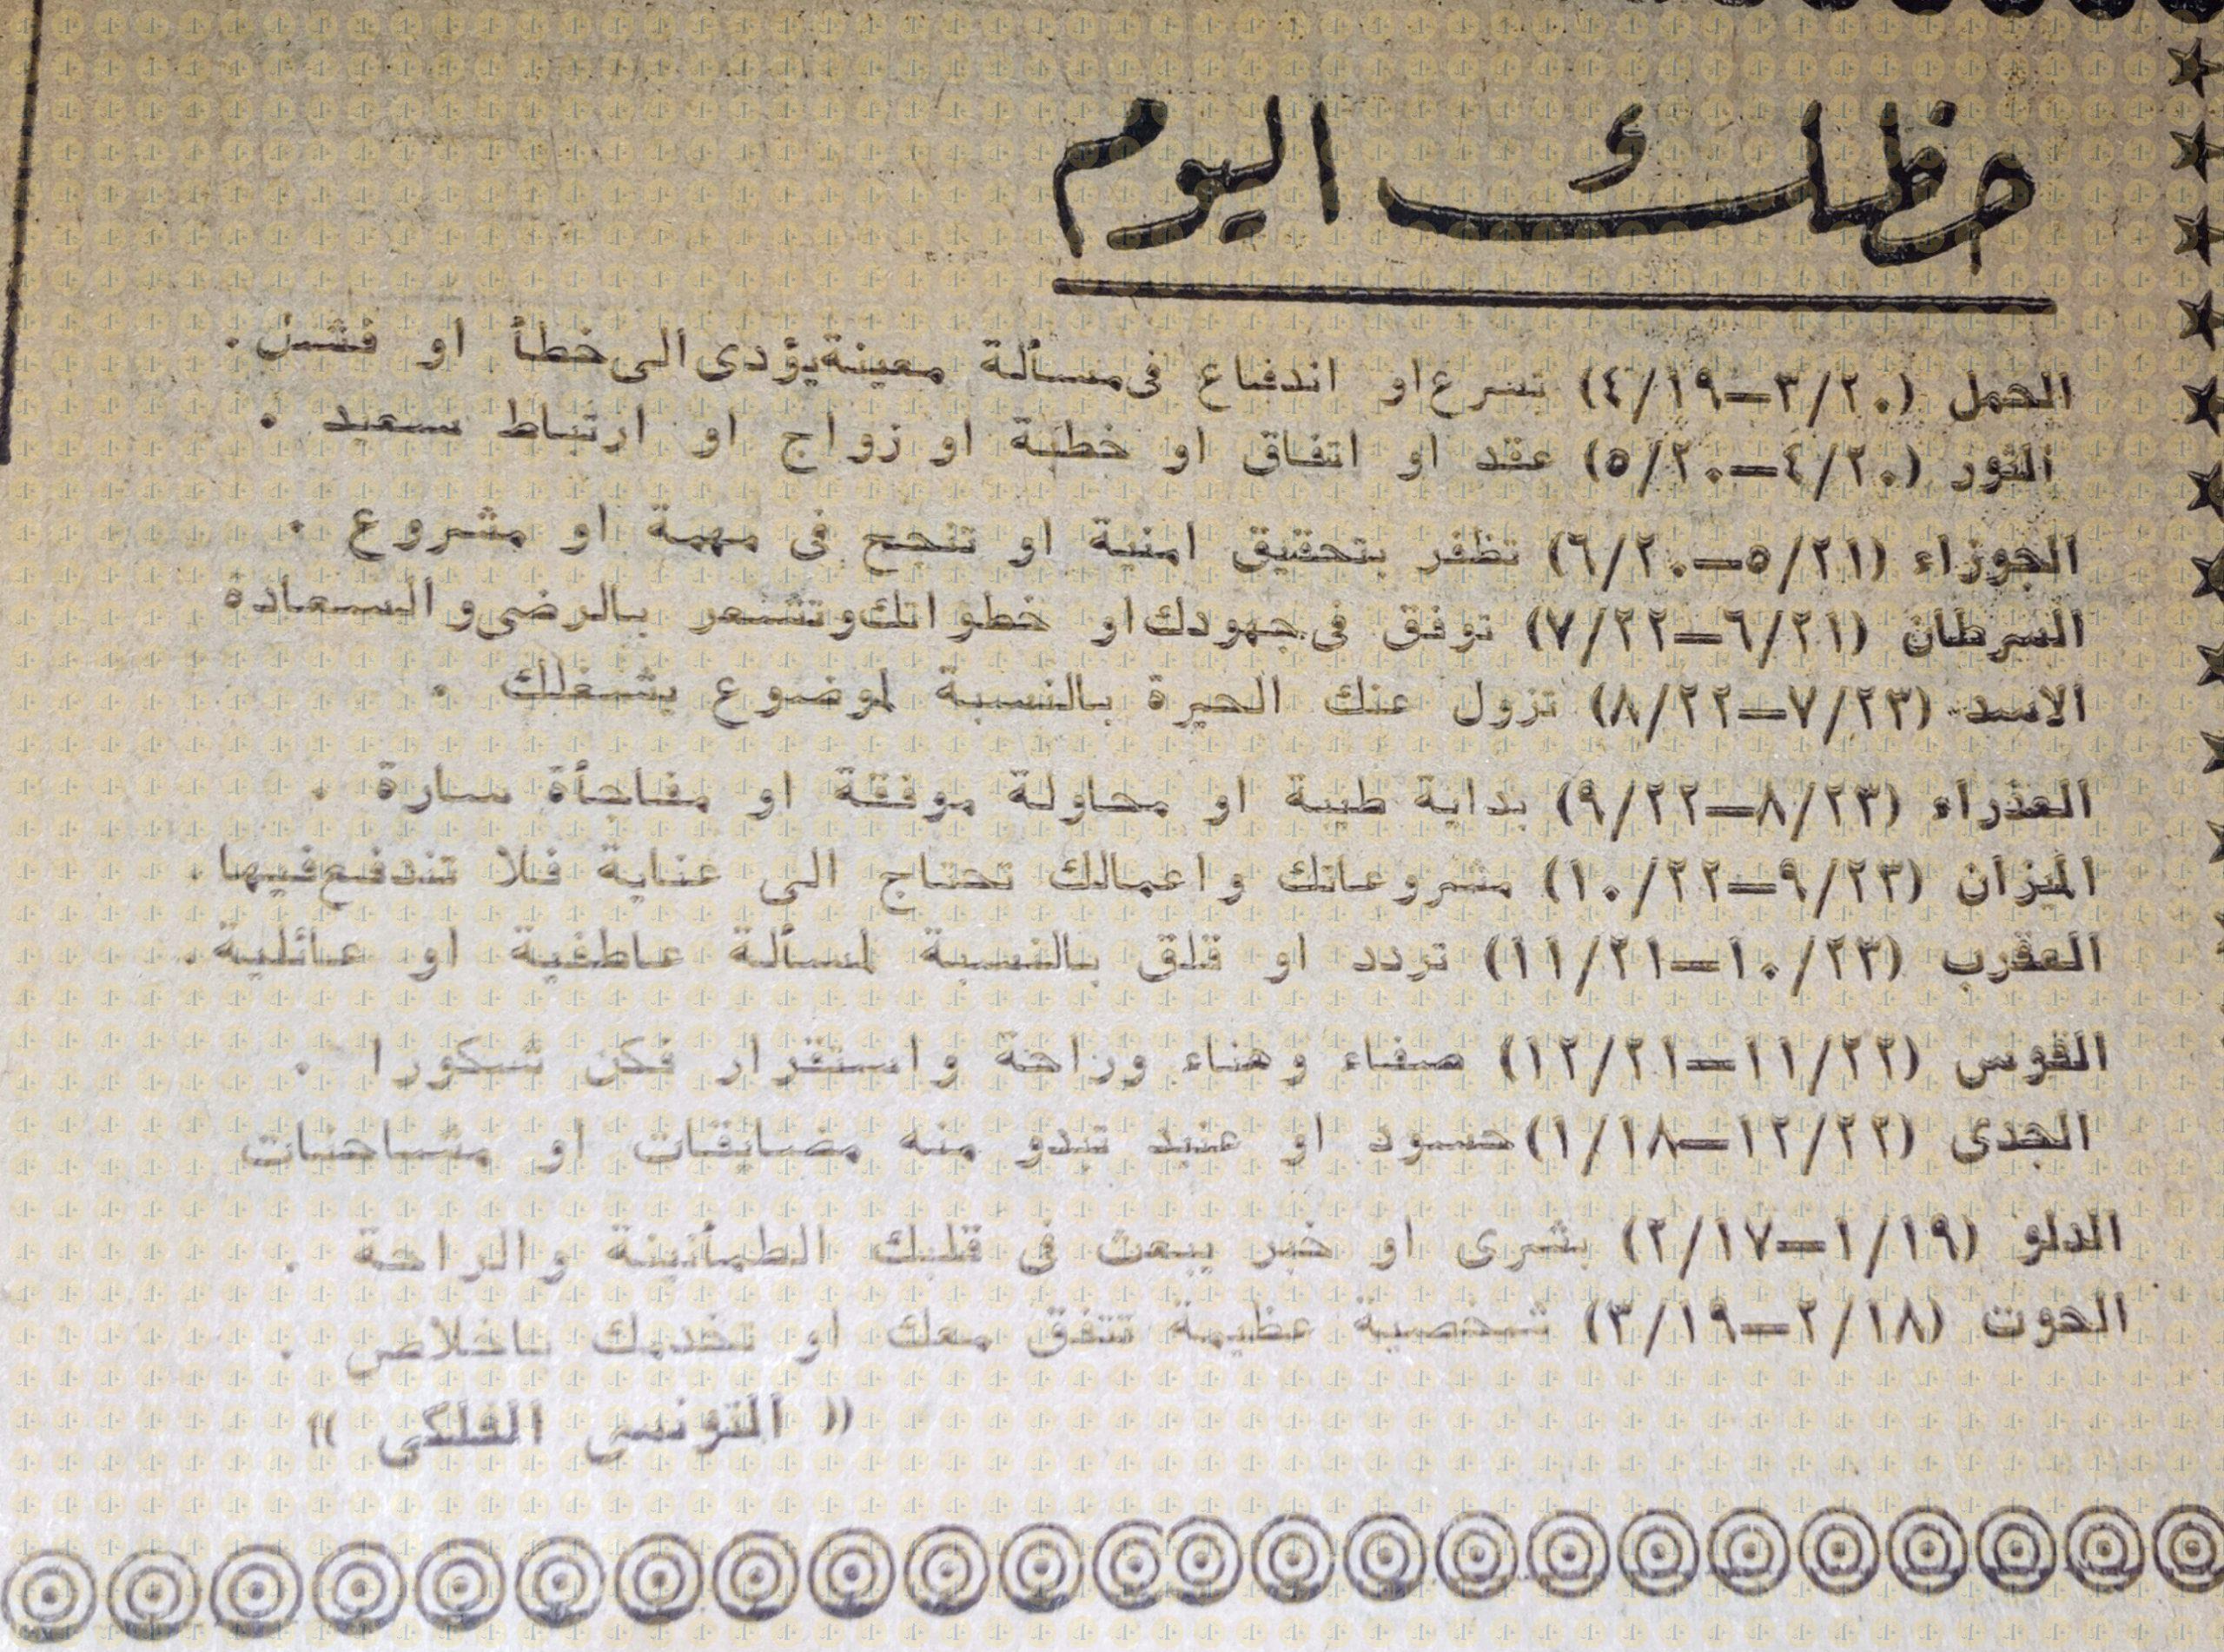 حظك اليوم - الأهرام عدد 12 أغسطس 1964